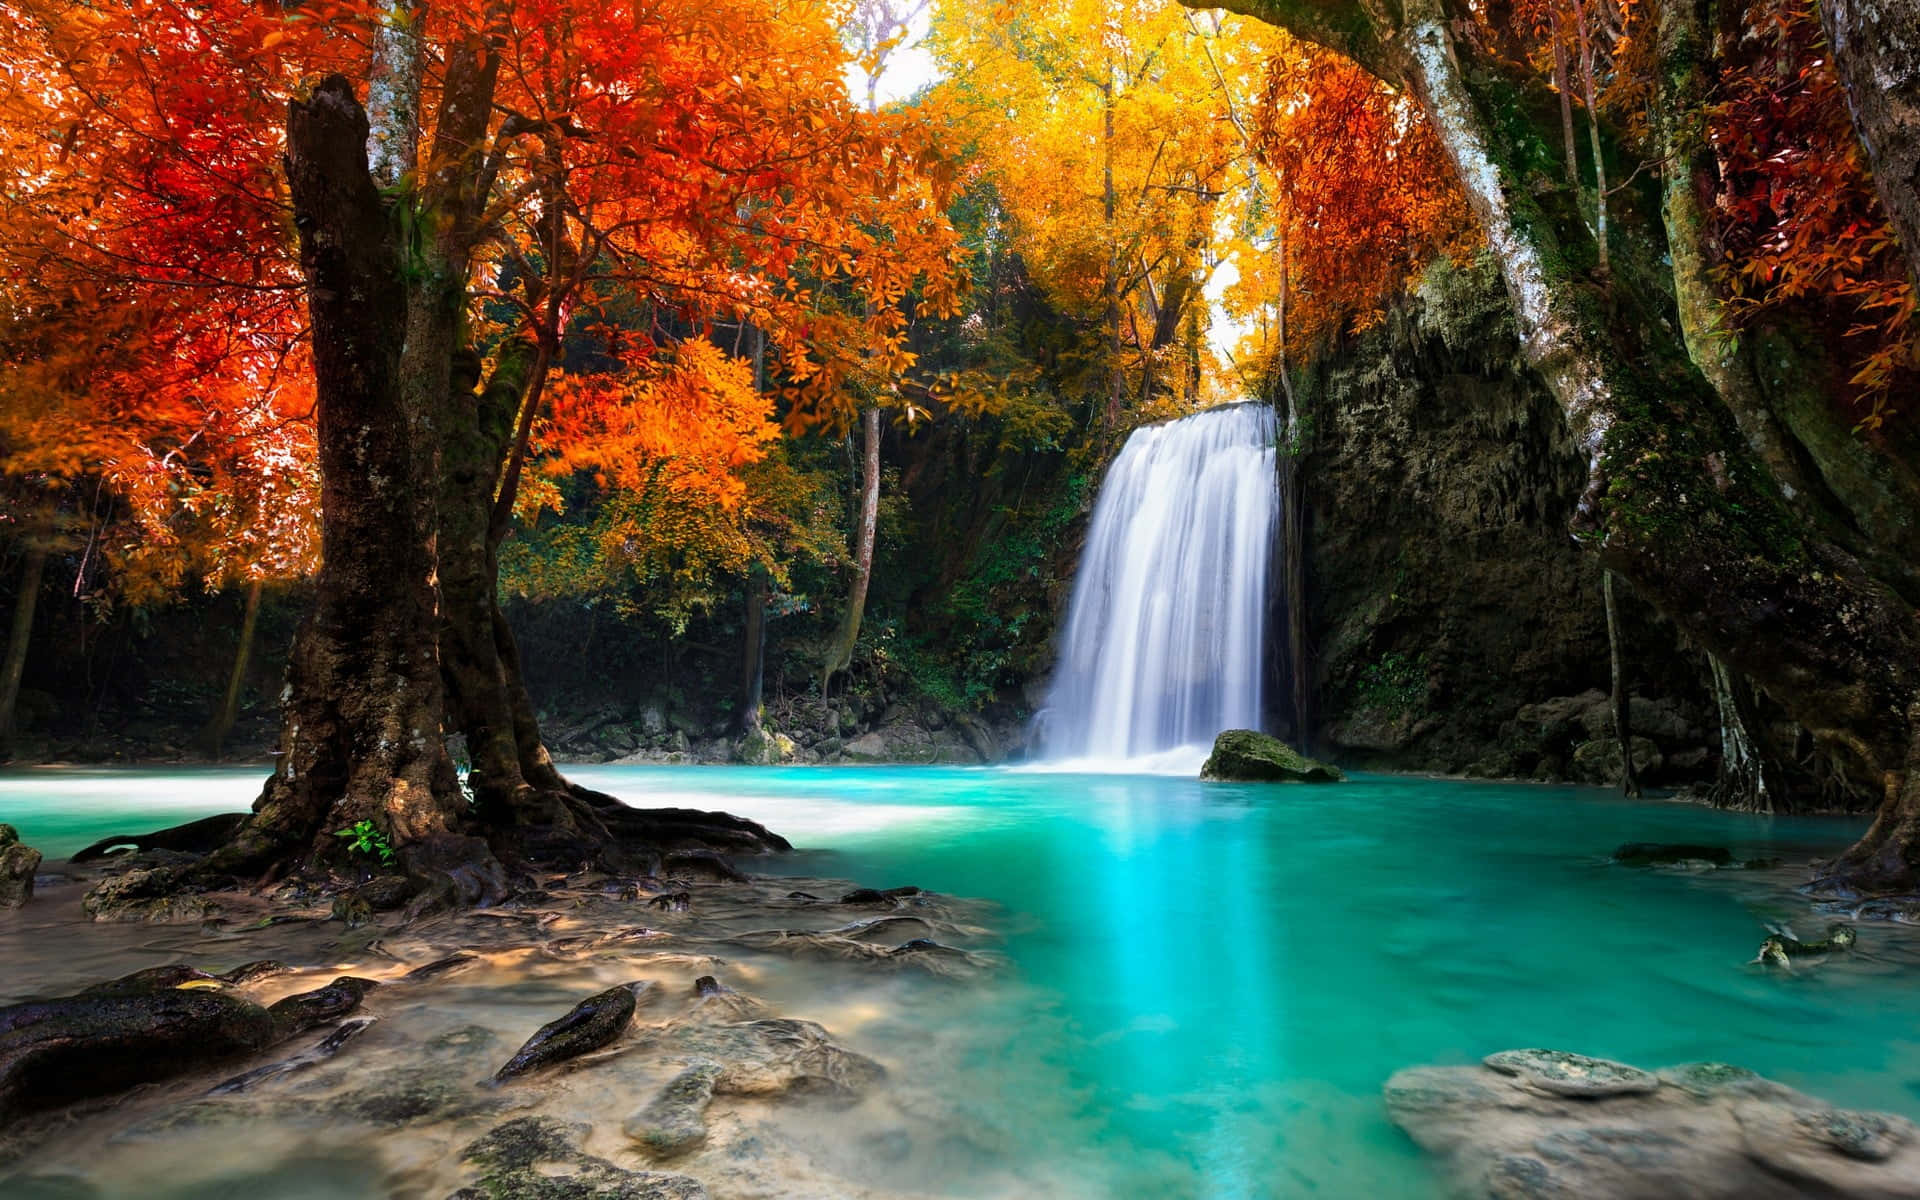 An enchanted cascading waterfall hidden in a lush green forest